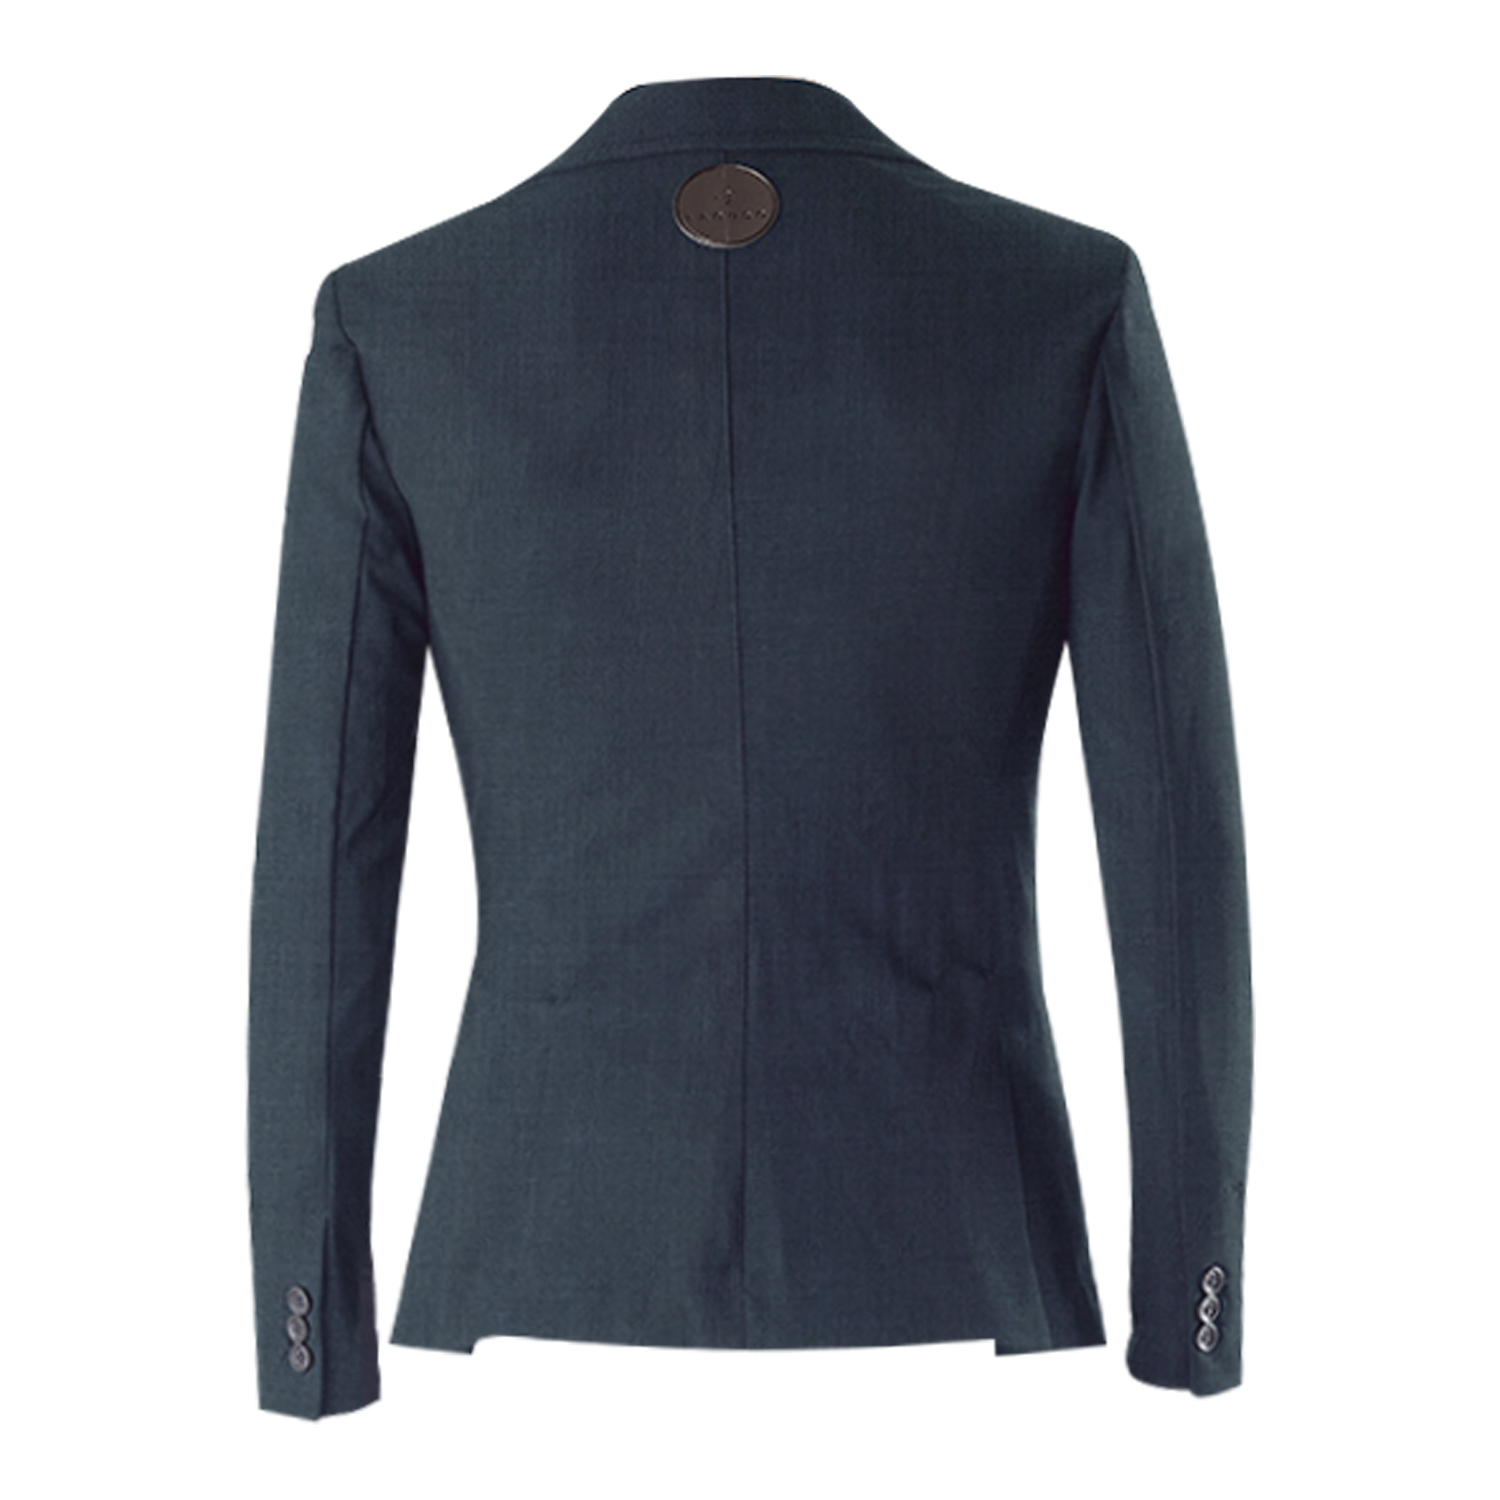 Jacket "James Wool" Greymel XL/52